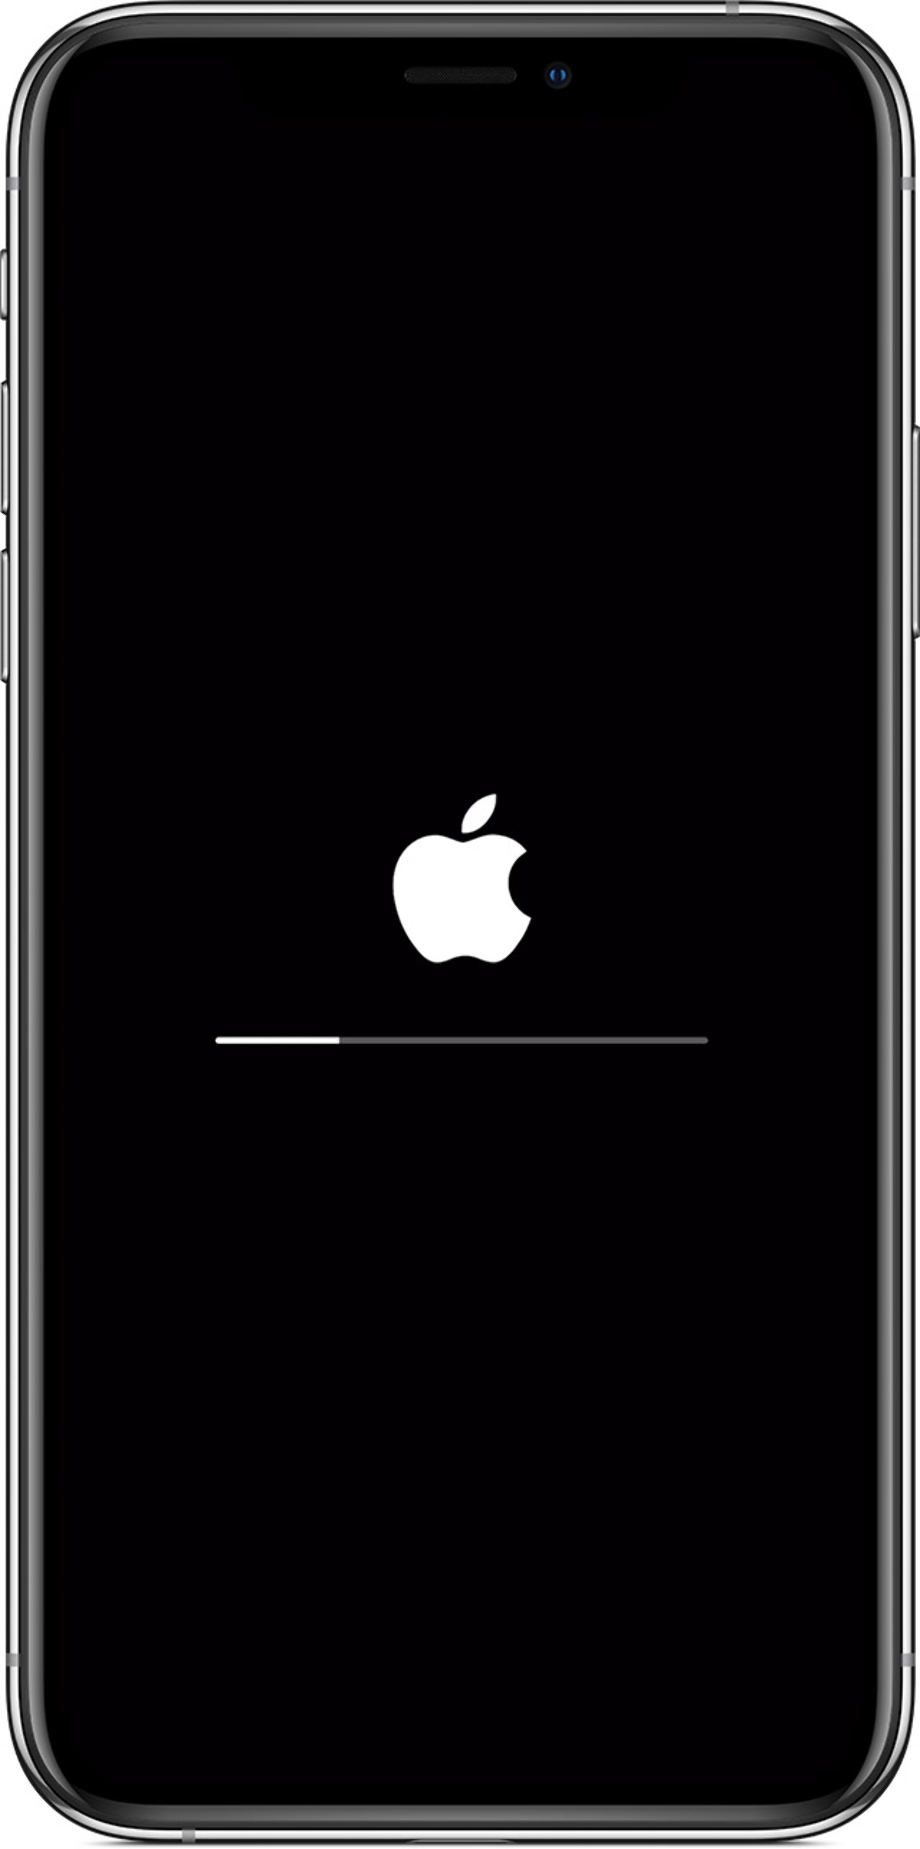 iphone logo ipad